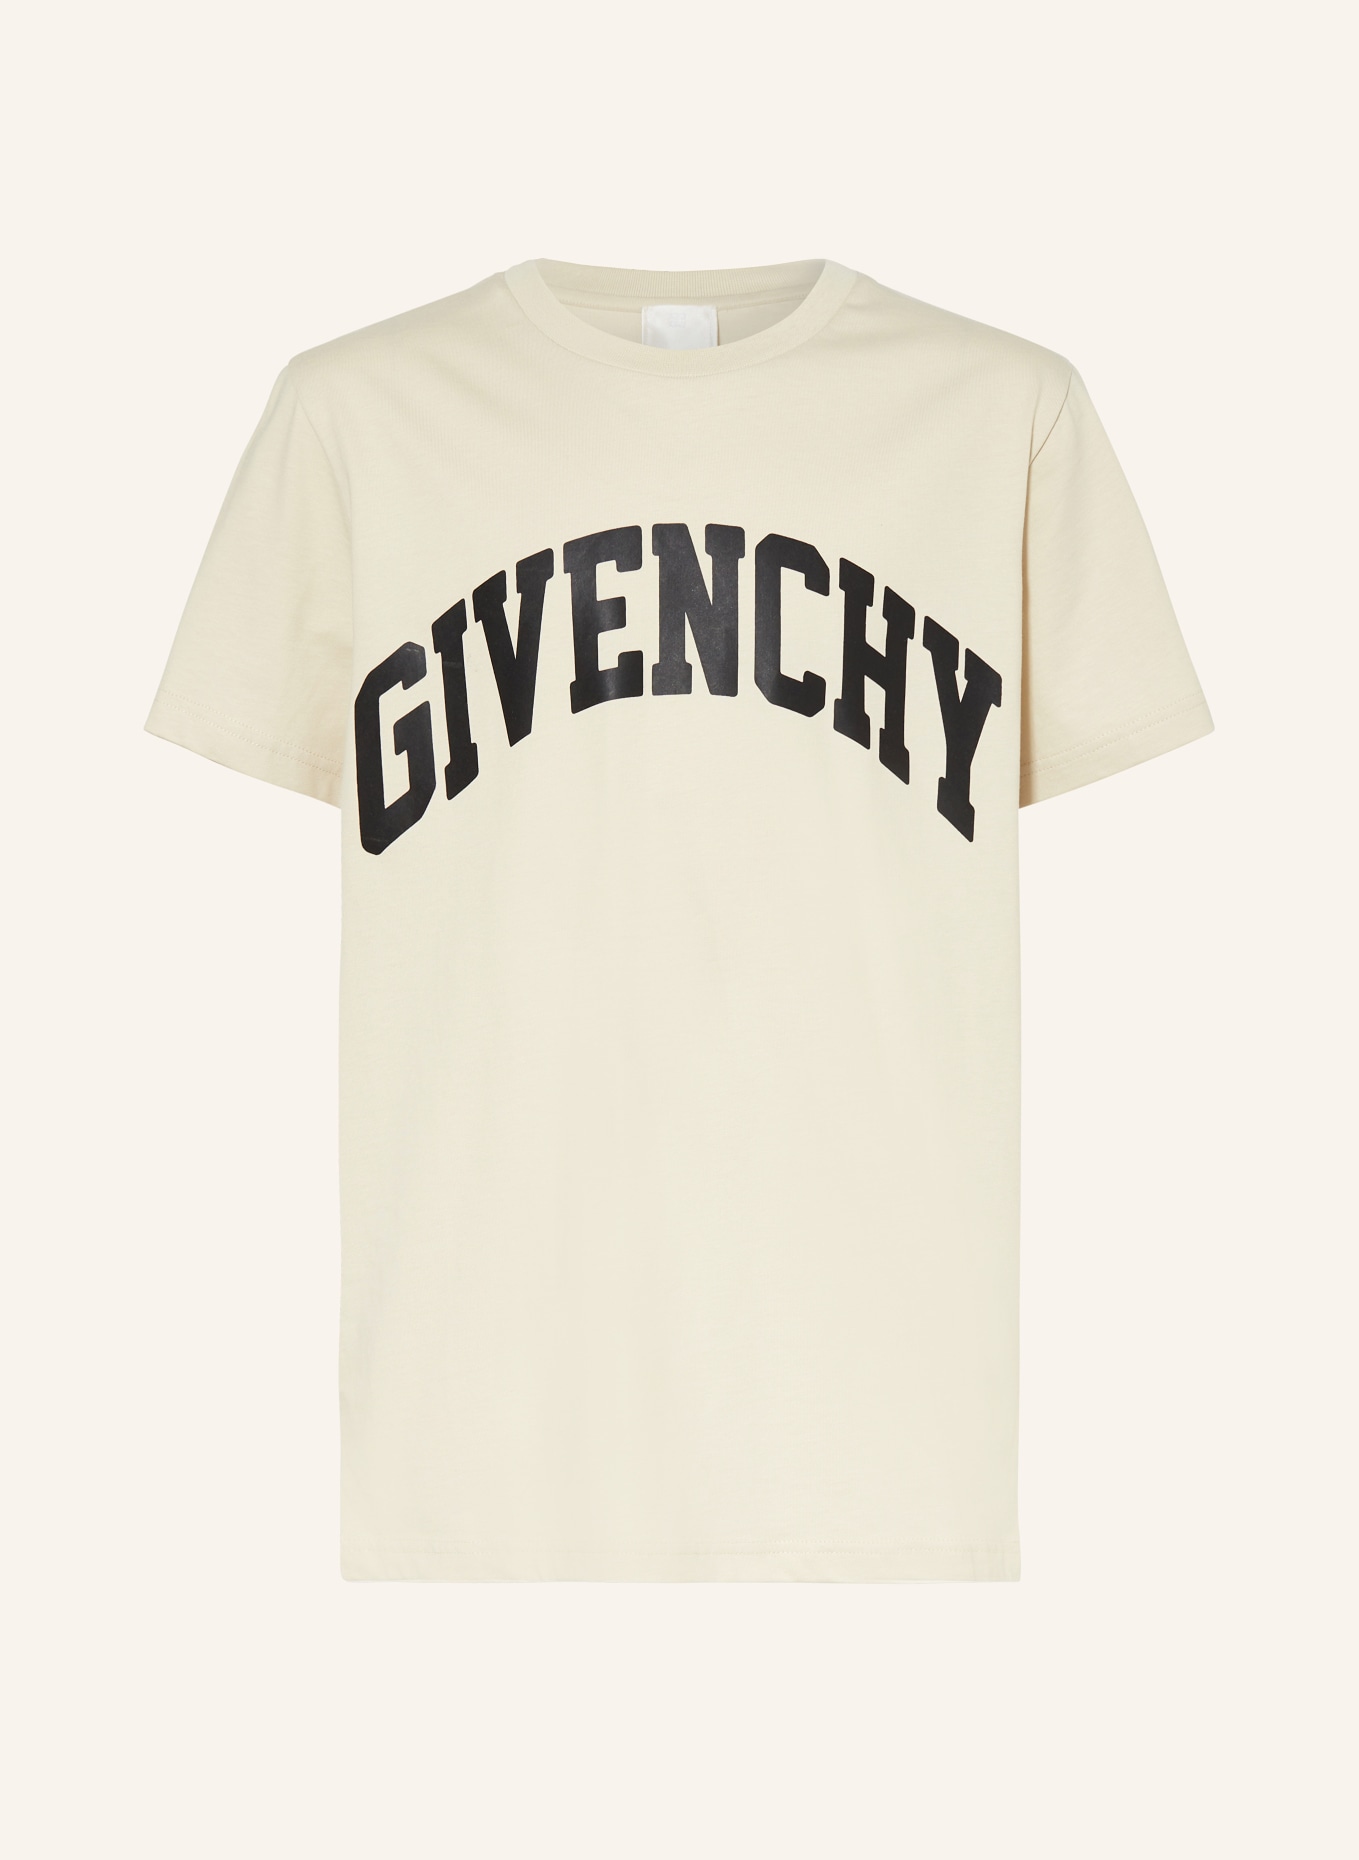 GIVENCHY T-Shirt, Farbe: CREME (Bild 1)